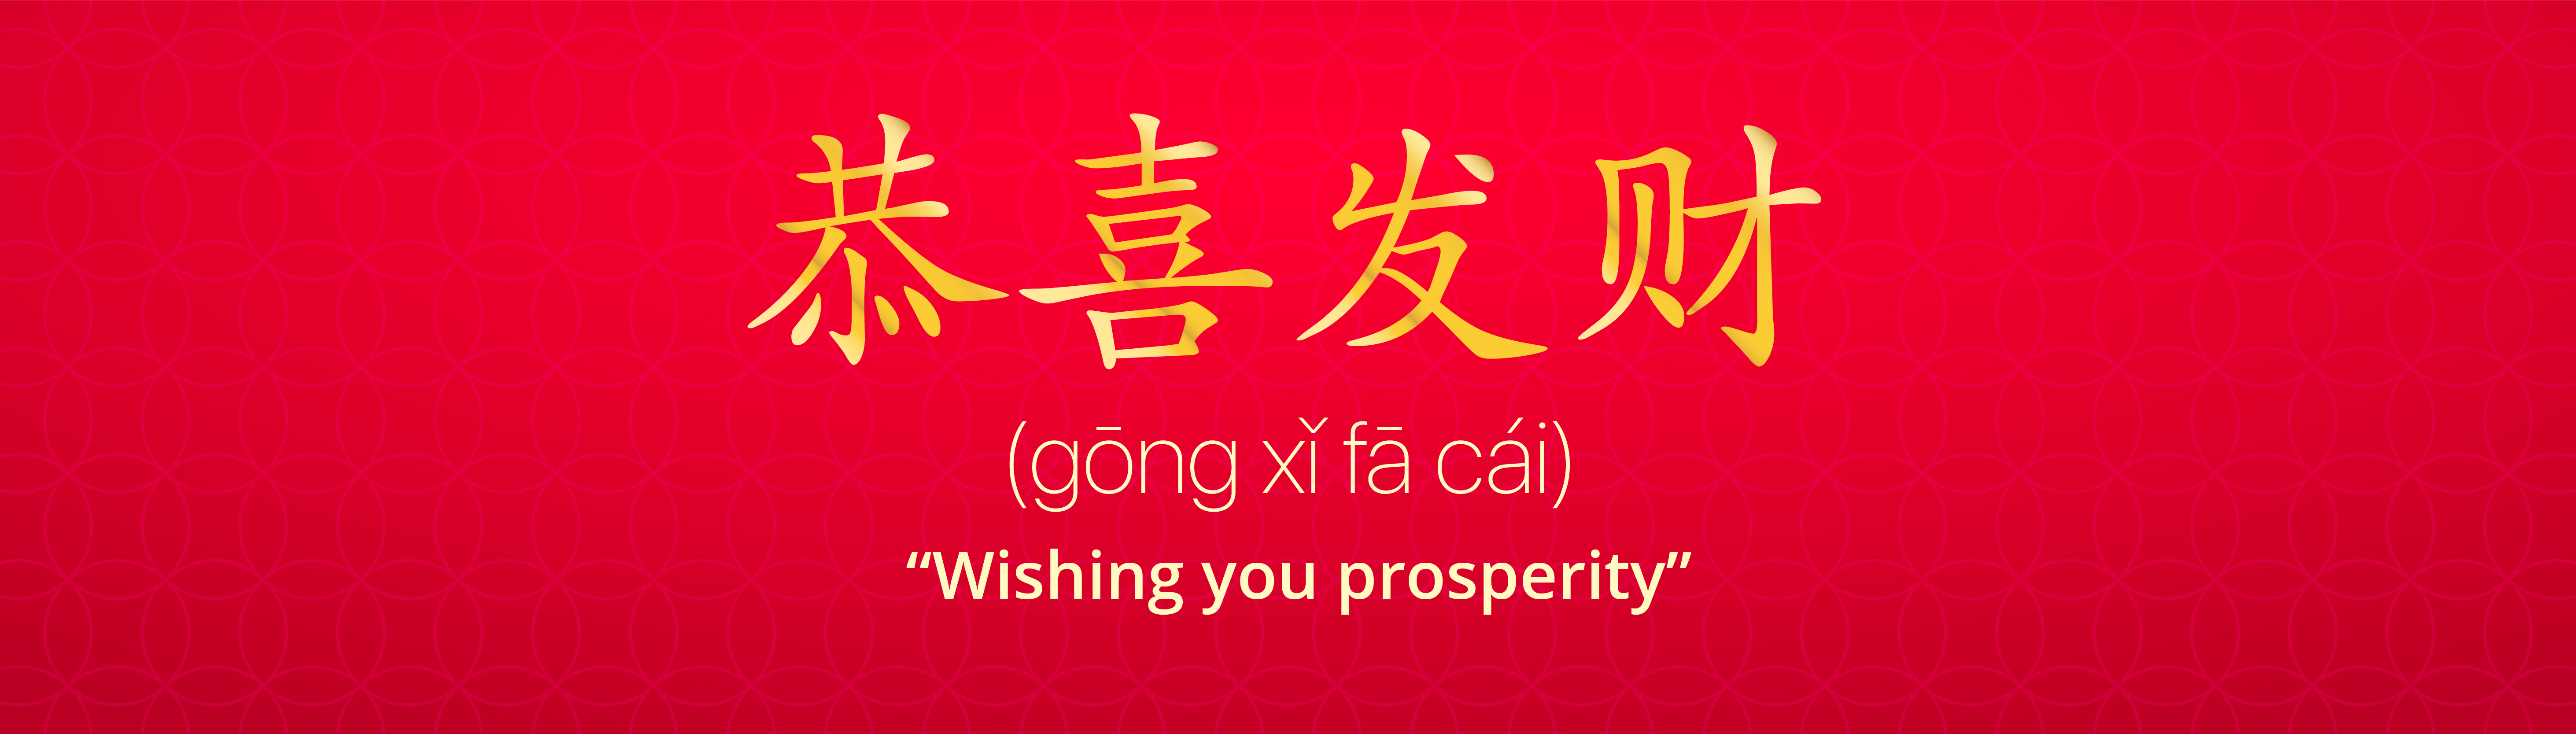 Gong Xi Fa Cai (恭喜发财 ) : “Wishing you prosperity”